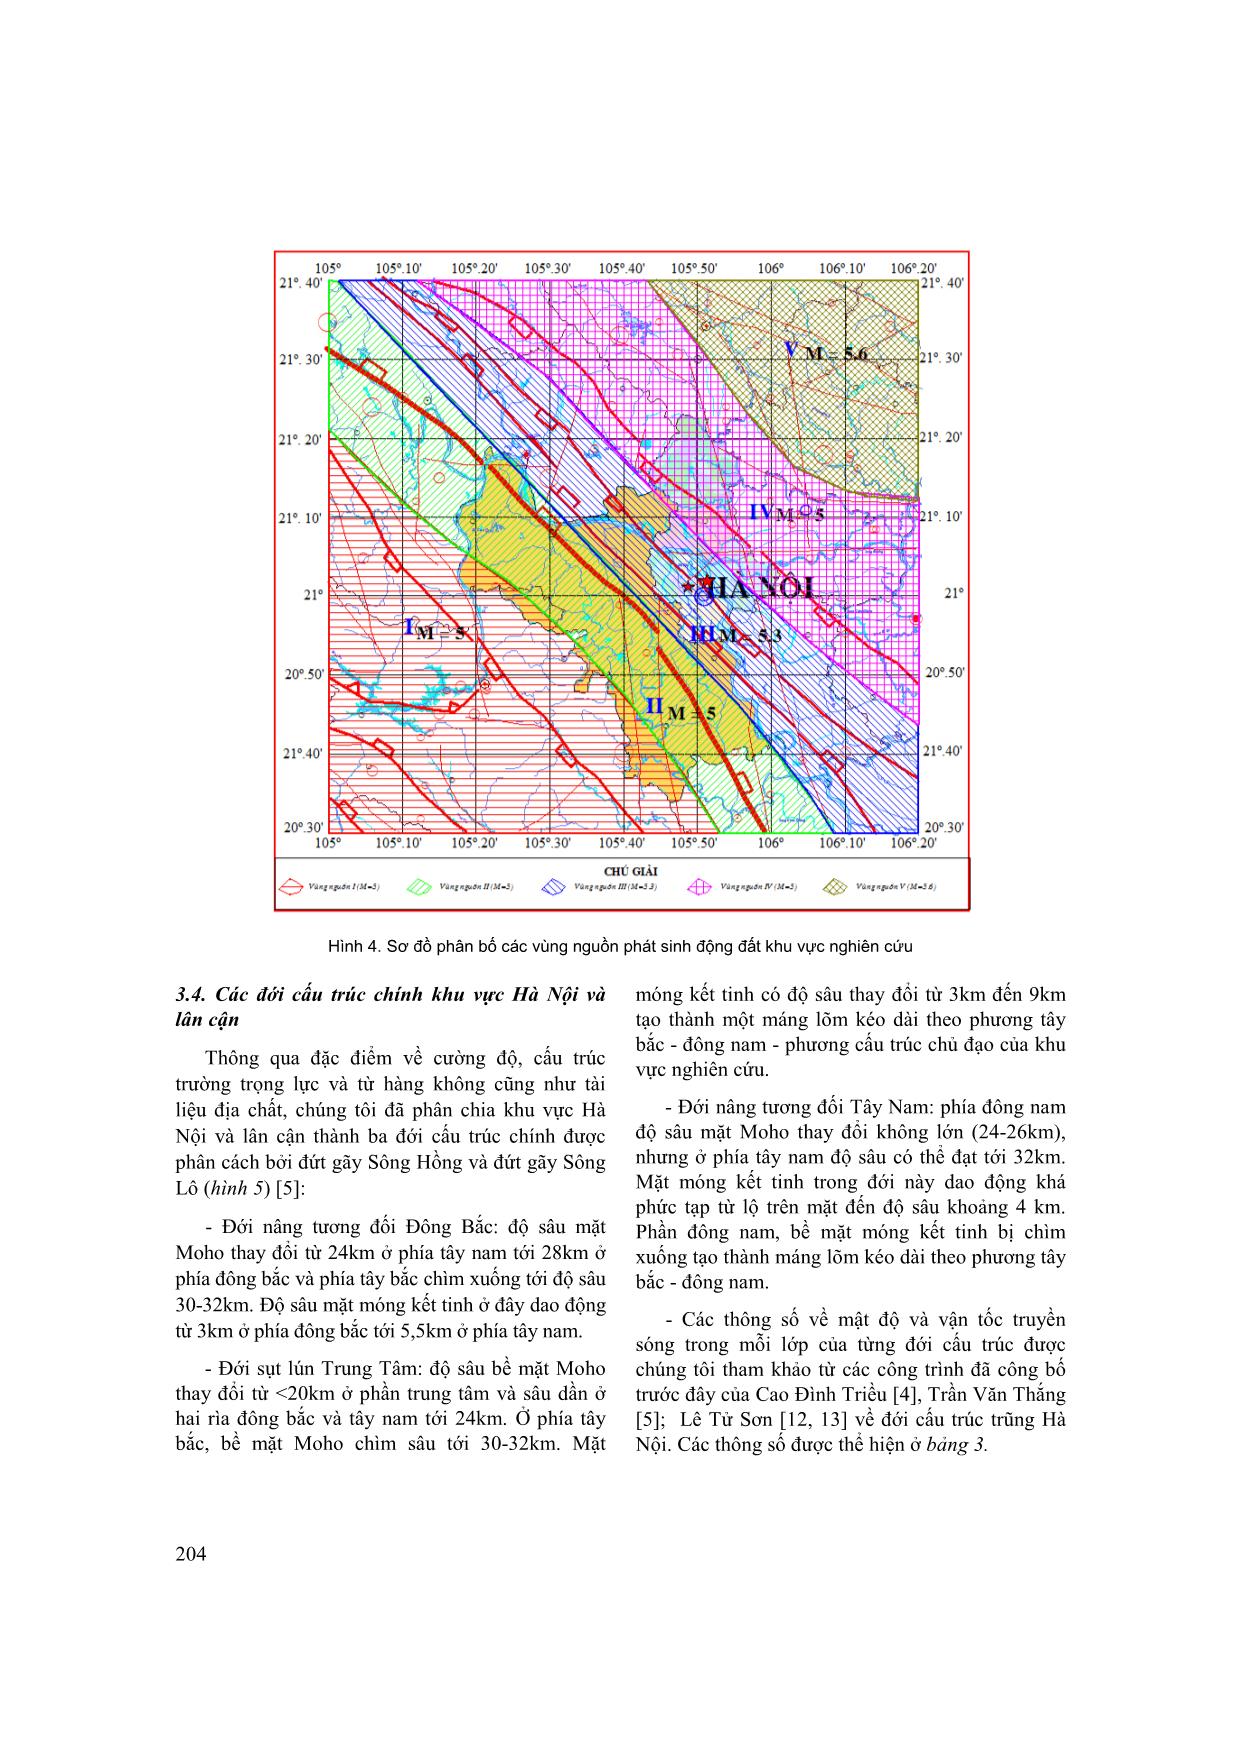 Đánh giá độ nguy hiểm động đất khu vực thành phố Hà Nội và lân cận trên cơ sở thuật toán tất định mới trang 5